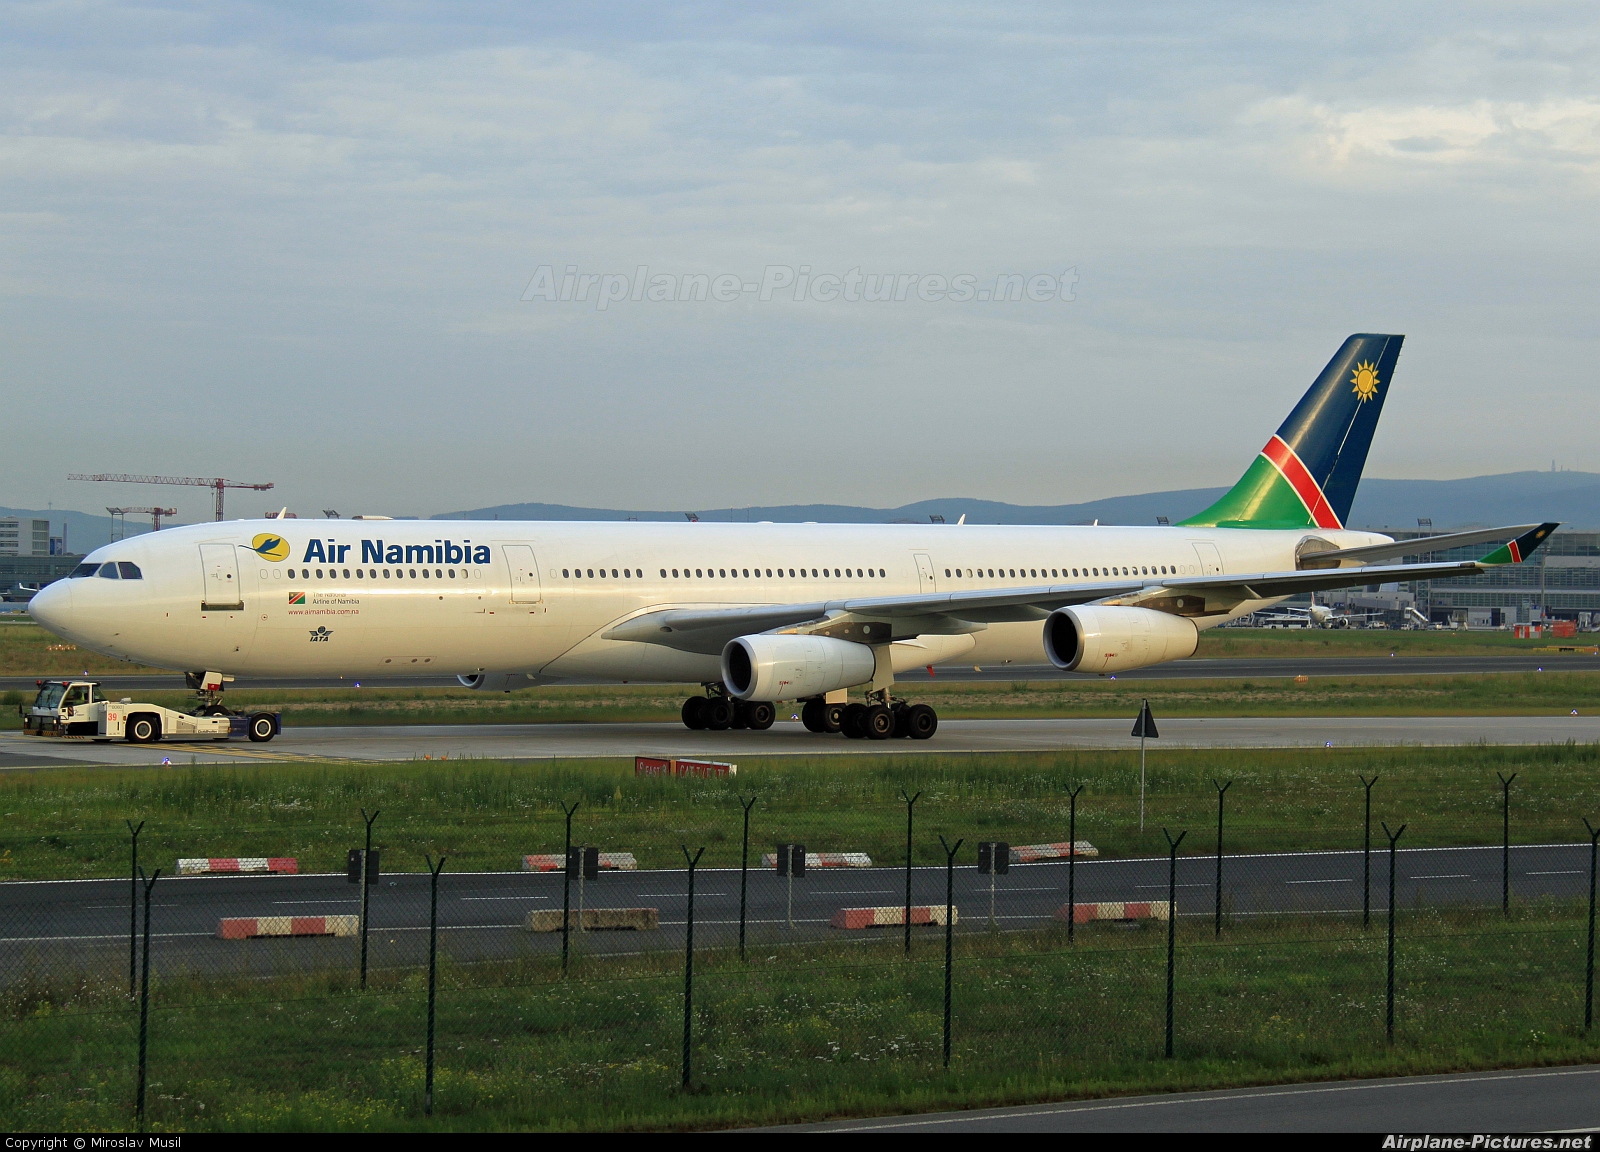 Air Namibia V5-NME aircraft at Frankfurt